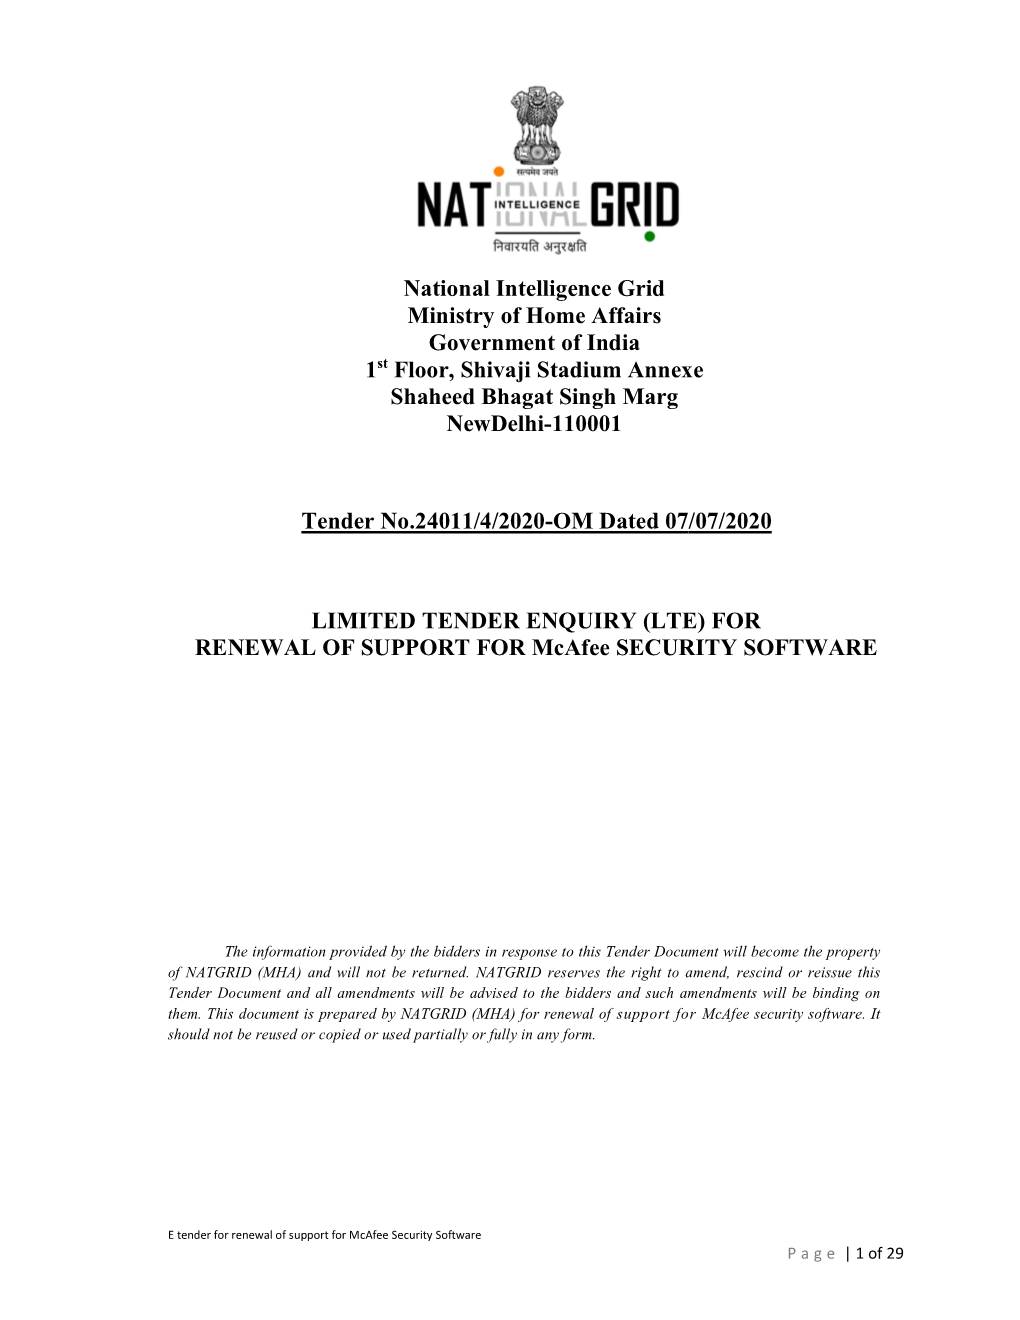 National Intelligence Grid (NATGRID)